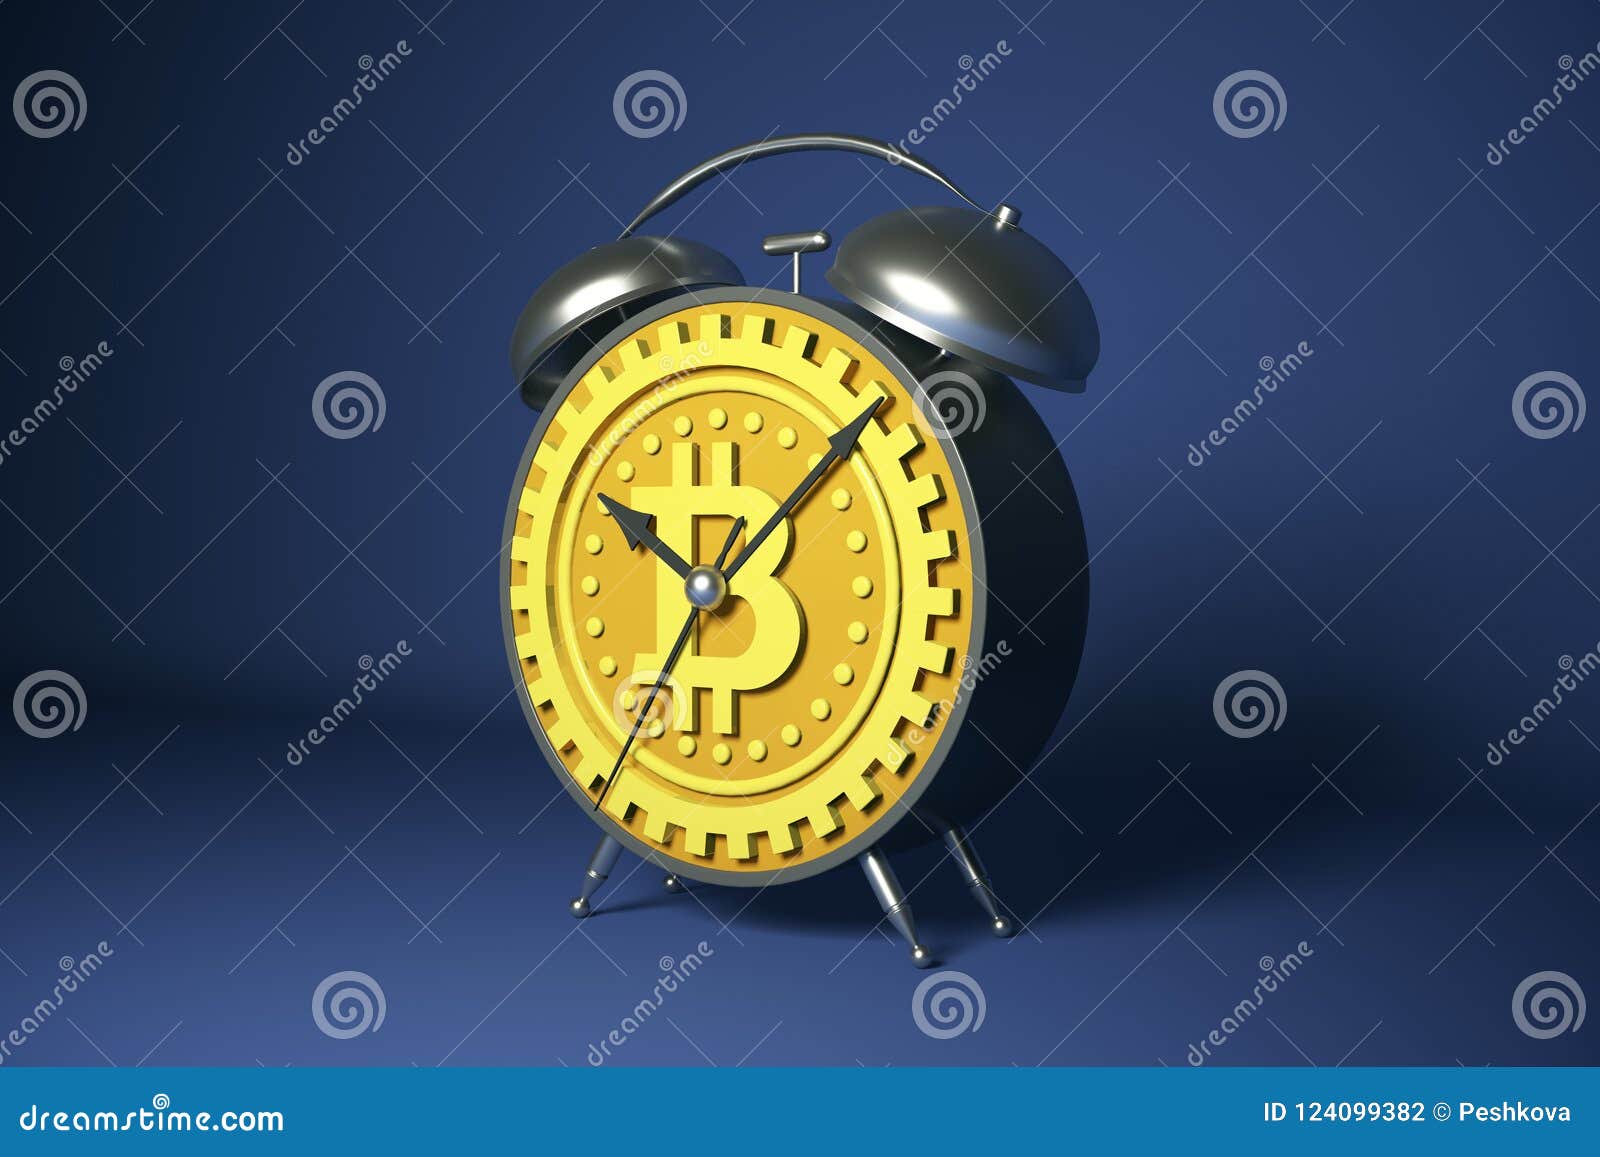 crypto alarm clock